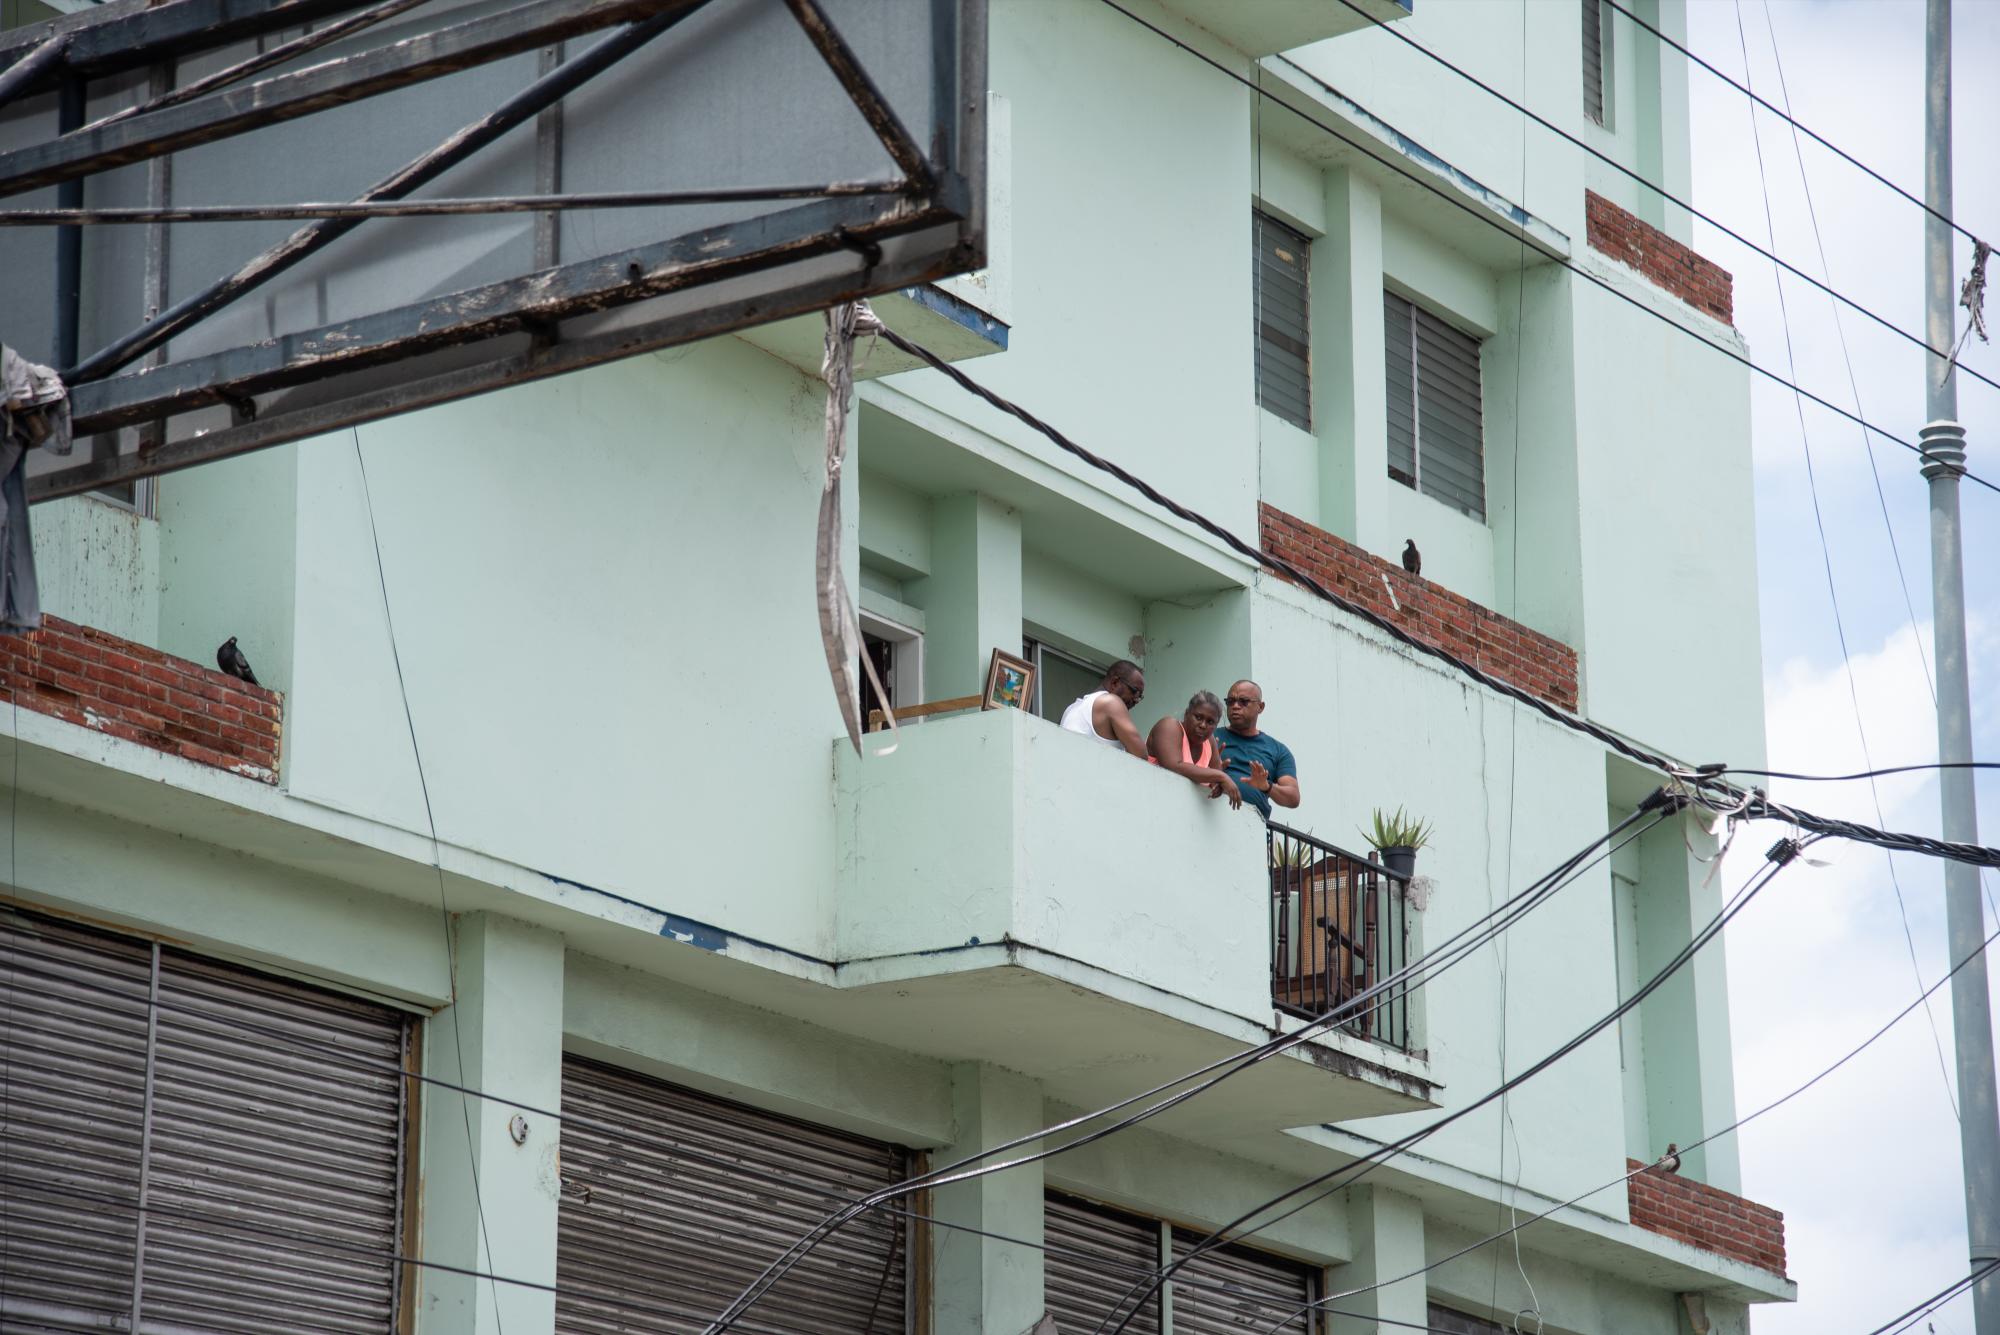 Vecinos del sector observan el inicio de las obras que prometen traer un poco orden en un sector arrabalizado por el comercio informal (Foto: Dania Acevedo / Diario Libre)